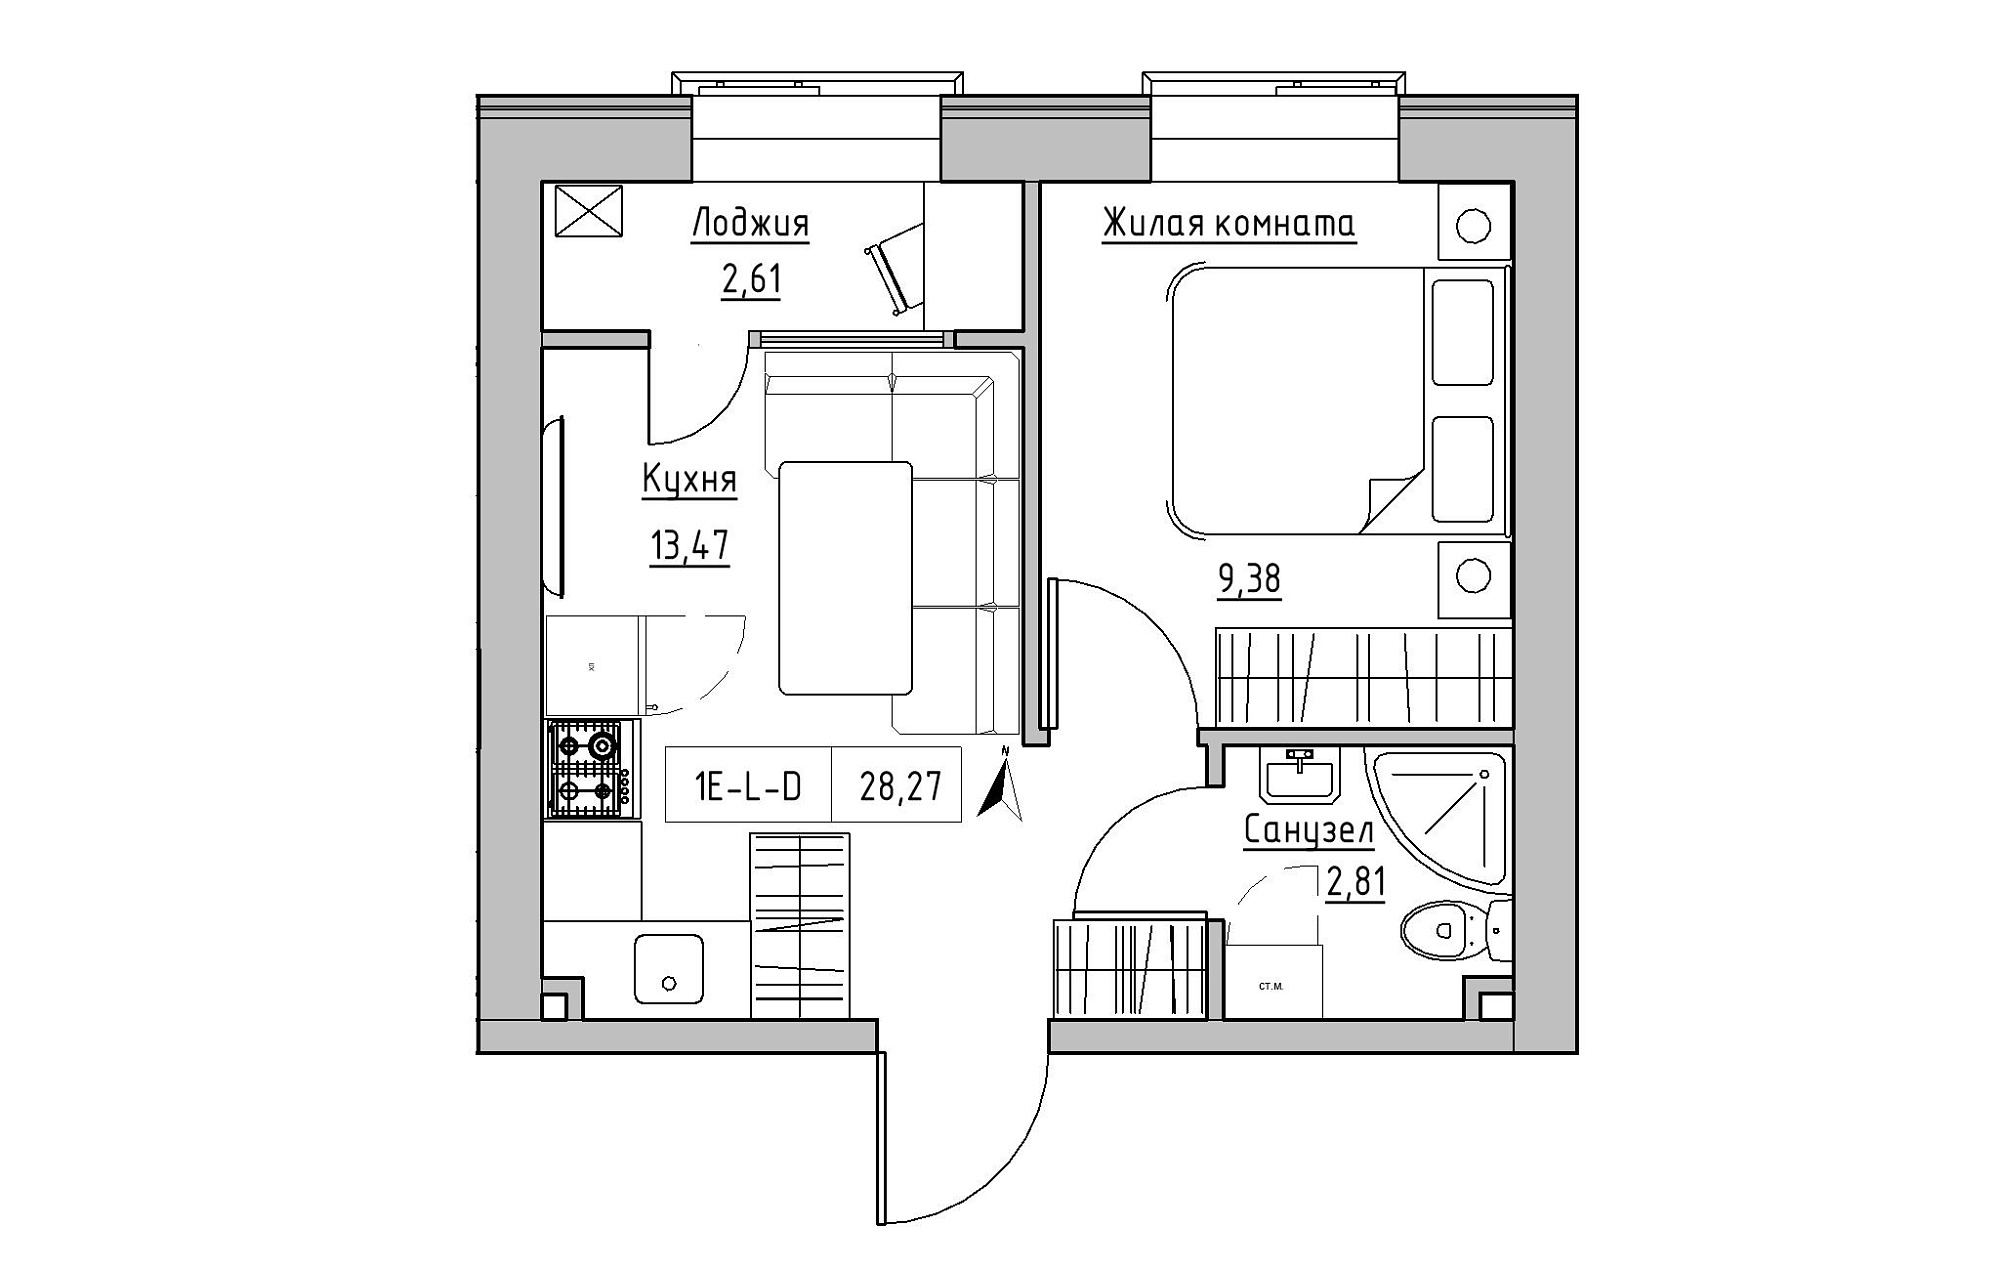 Планировка 1-к квартира площей 28.27м2, KS-019-03/0015.